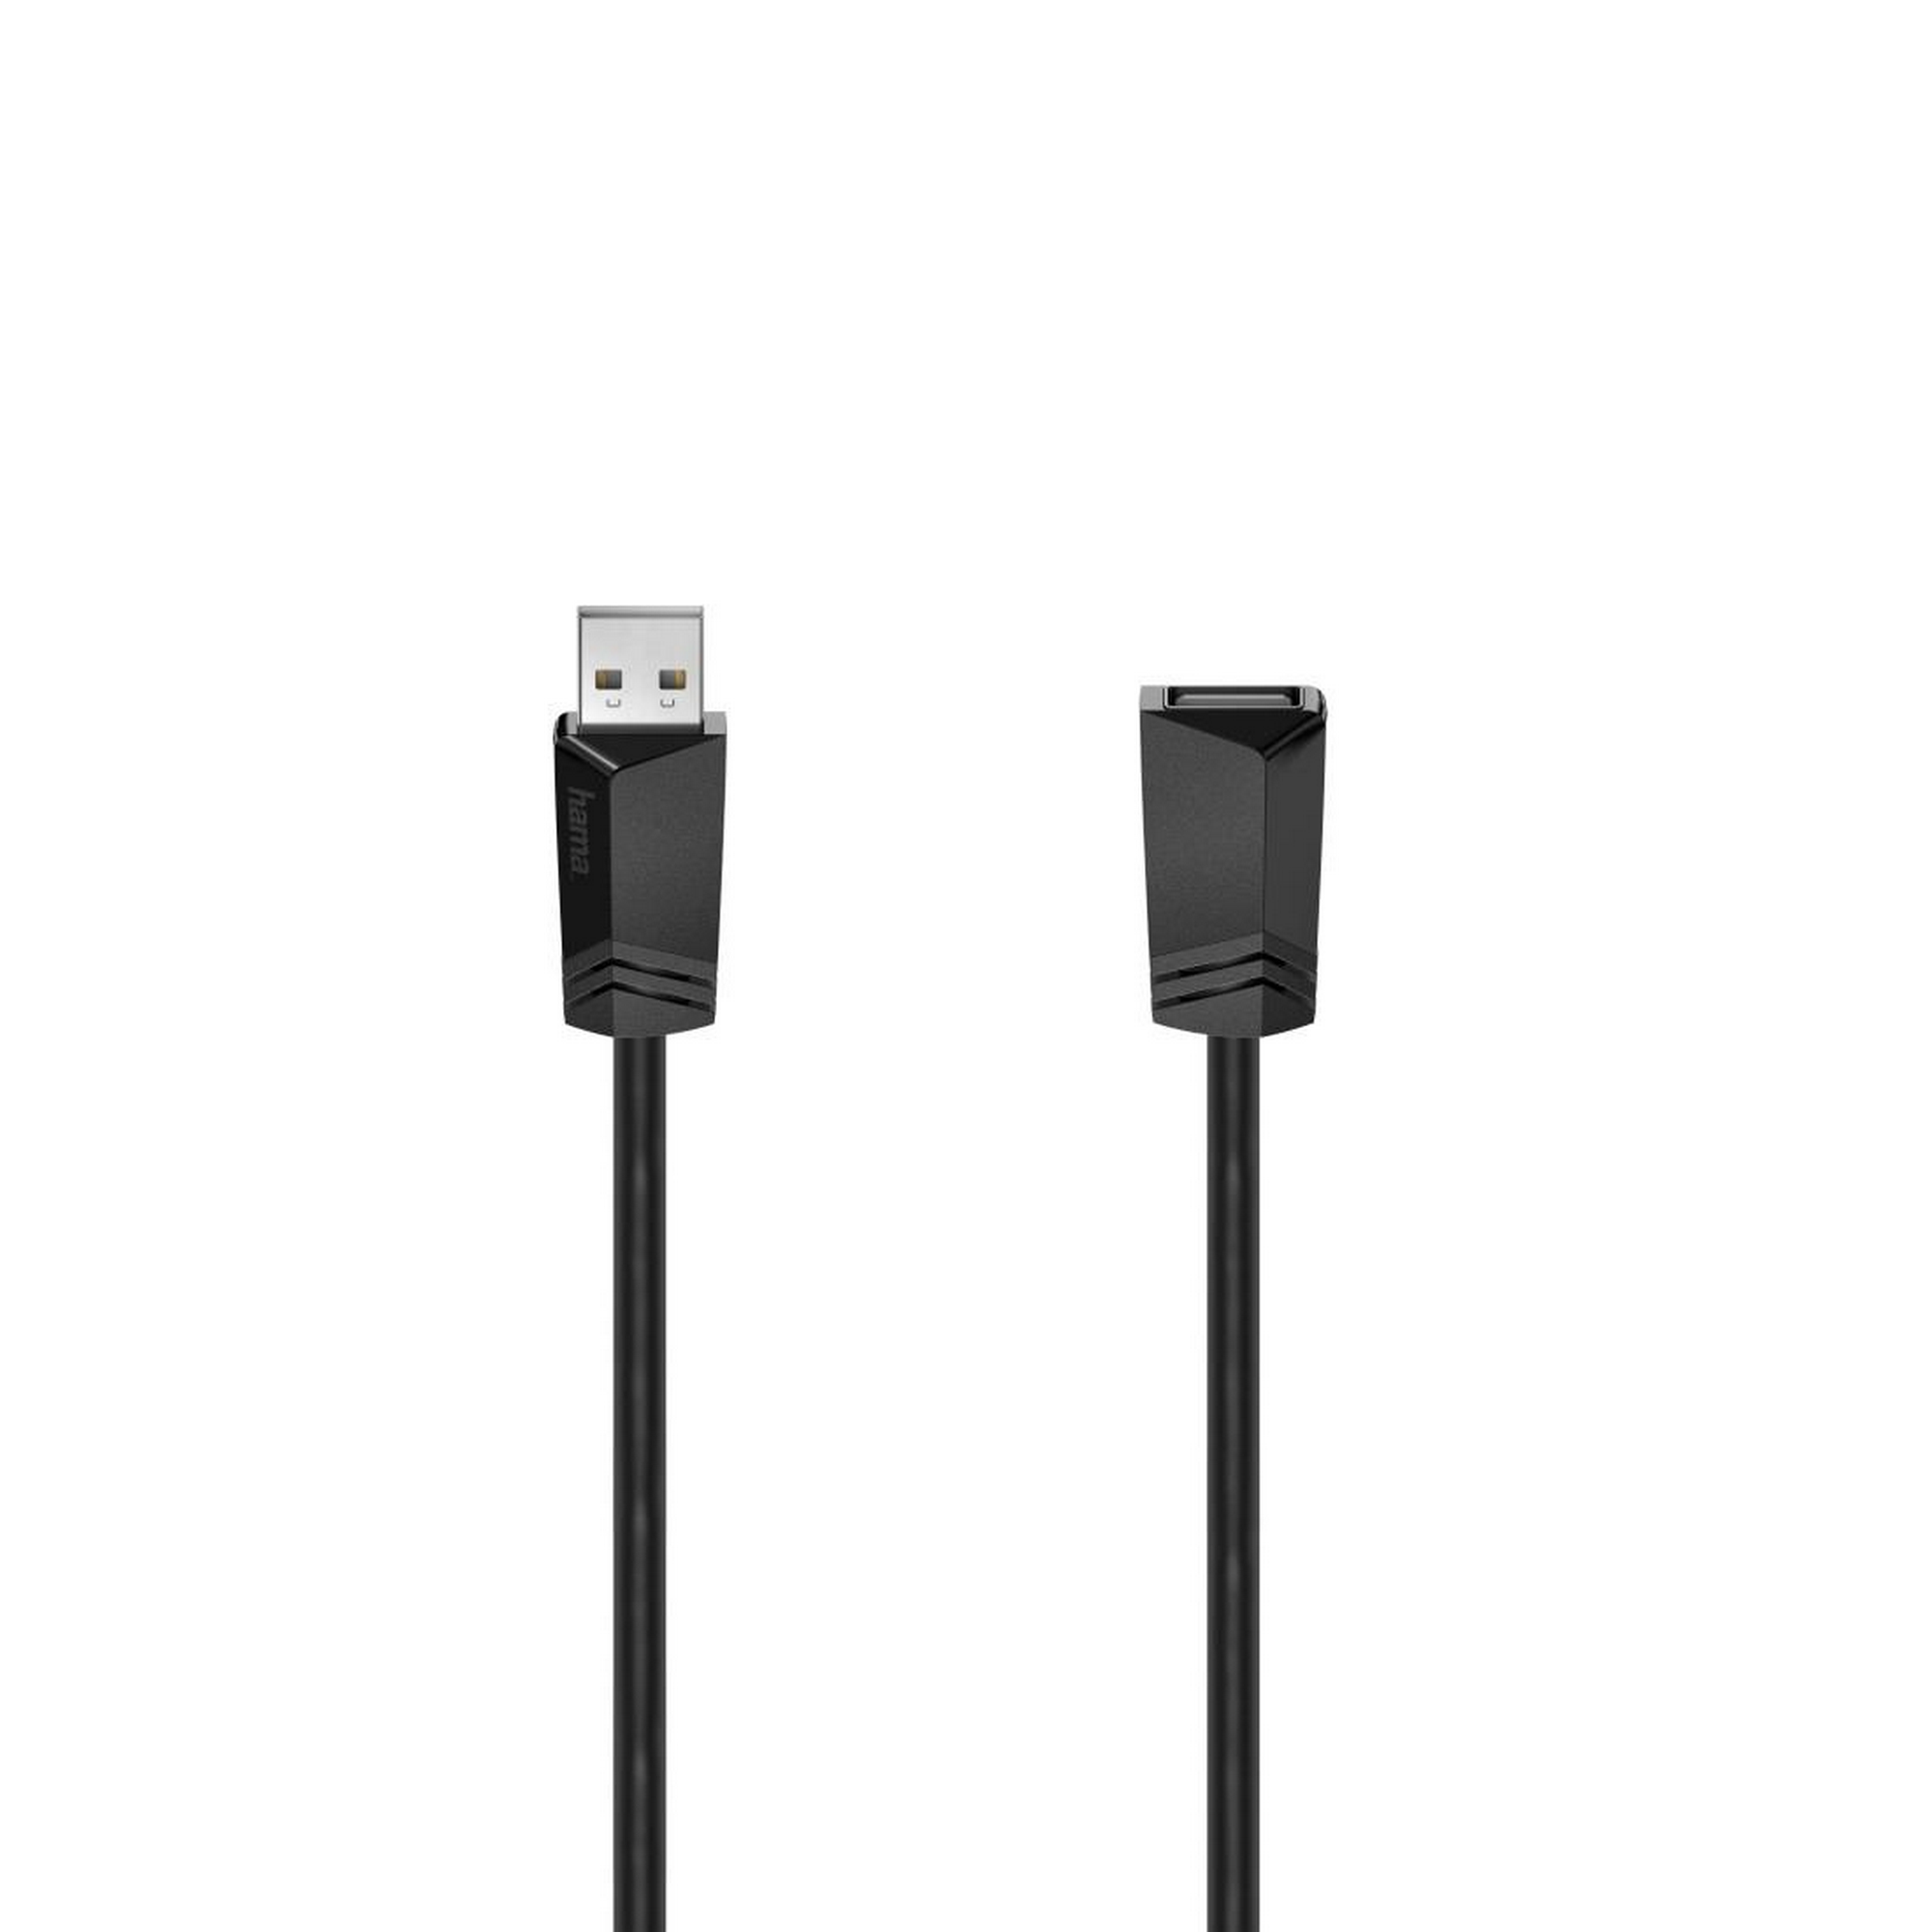 USB-Verlängerungskabel USB 2.0 schwarz 3 m + product picture